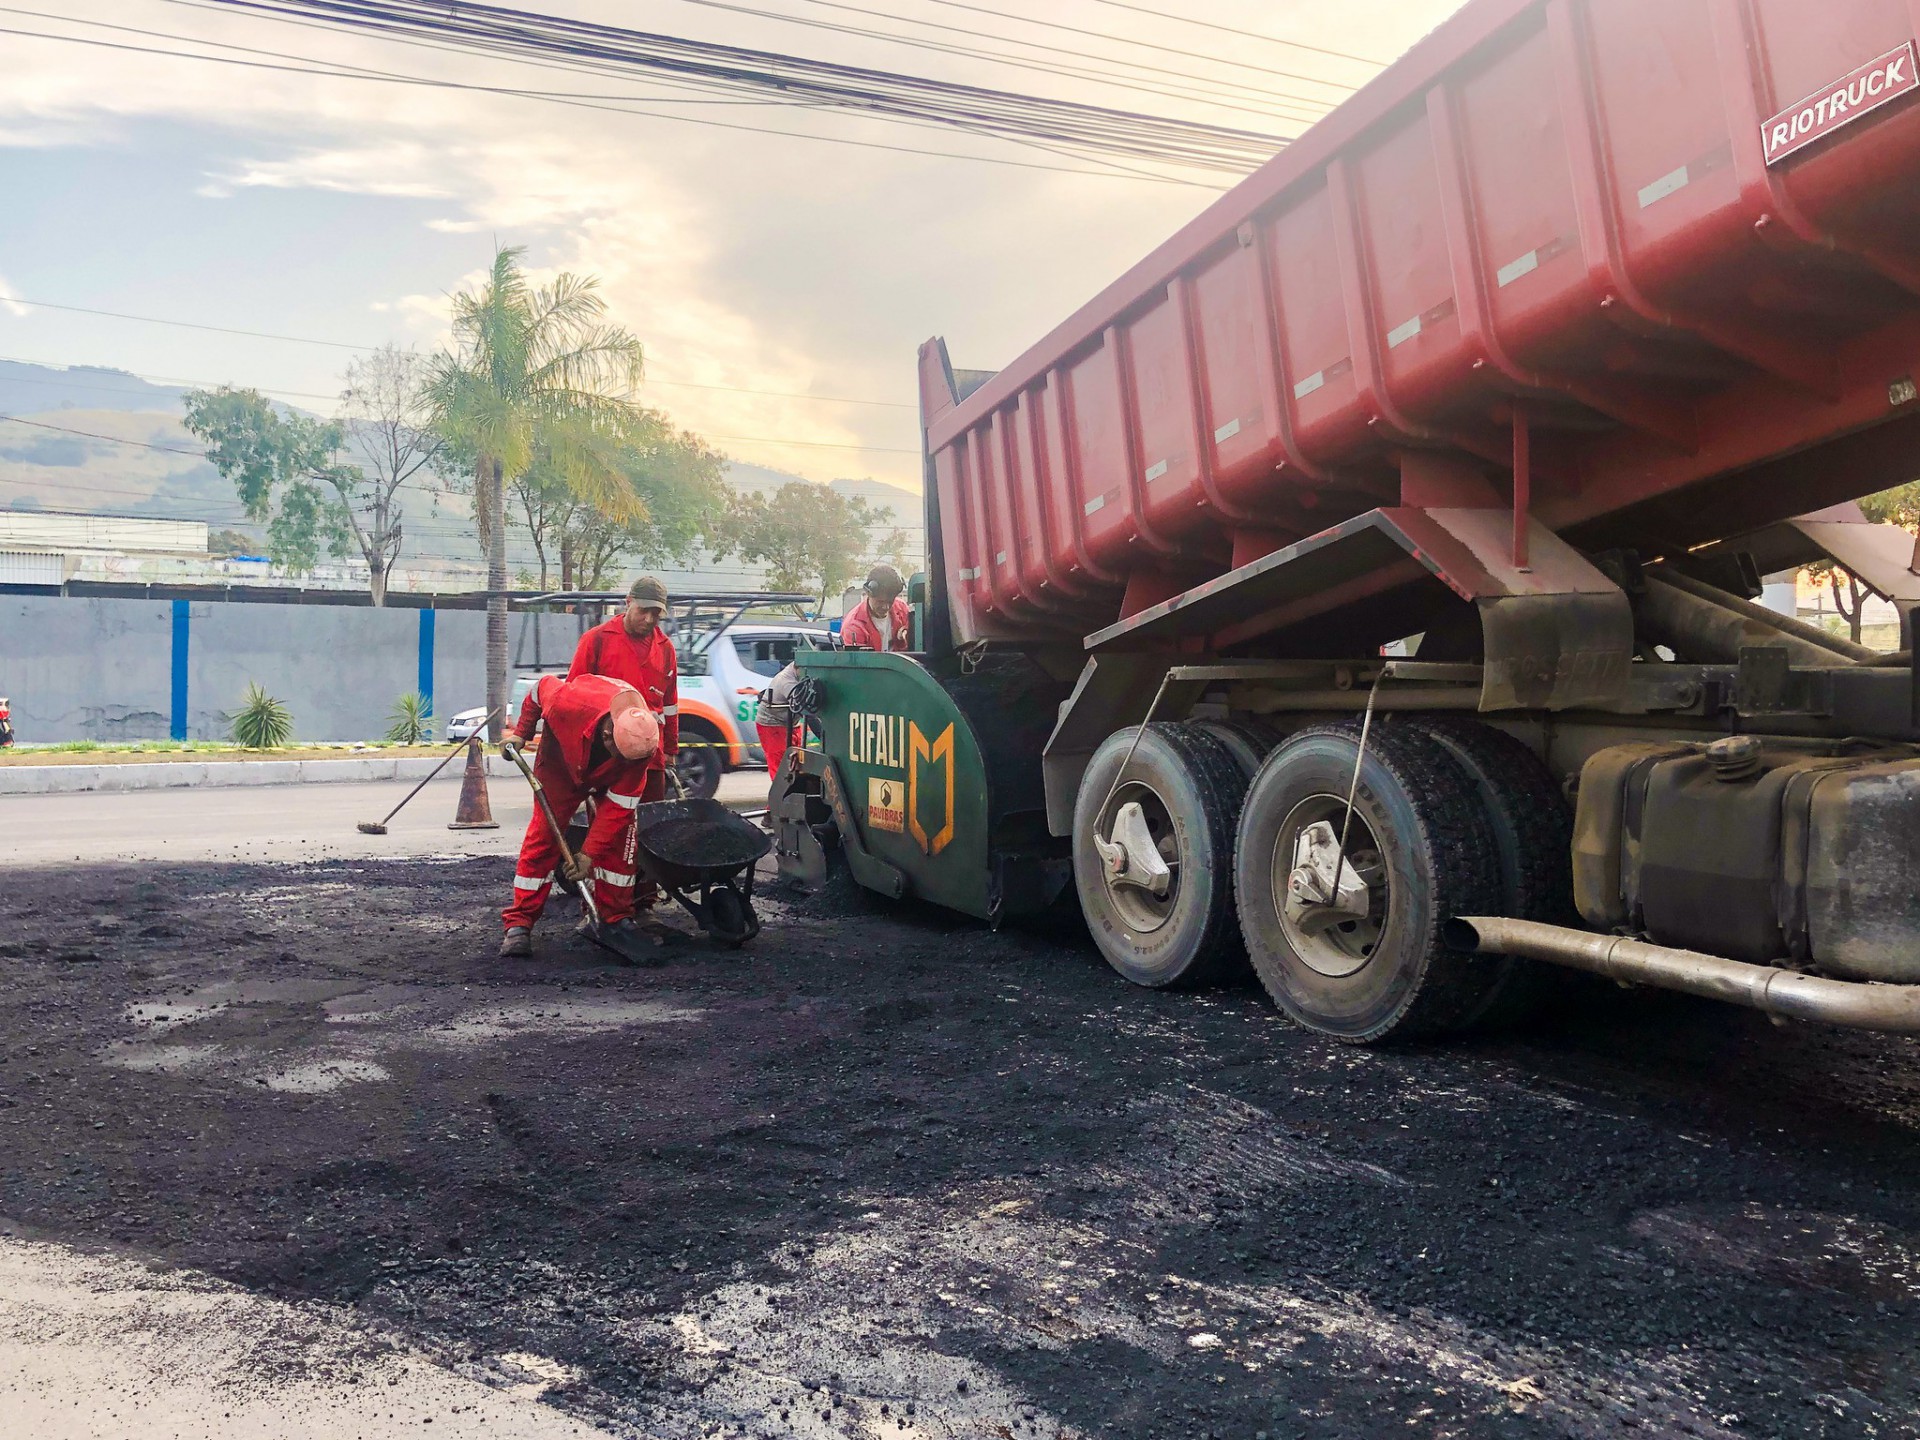 Importante via da cidade recebeu renovação completa da camada de asfalto - PMM